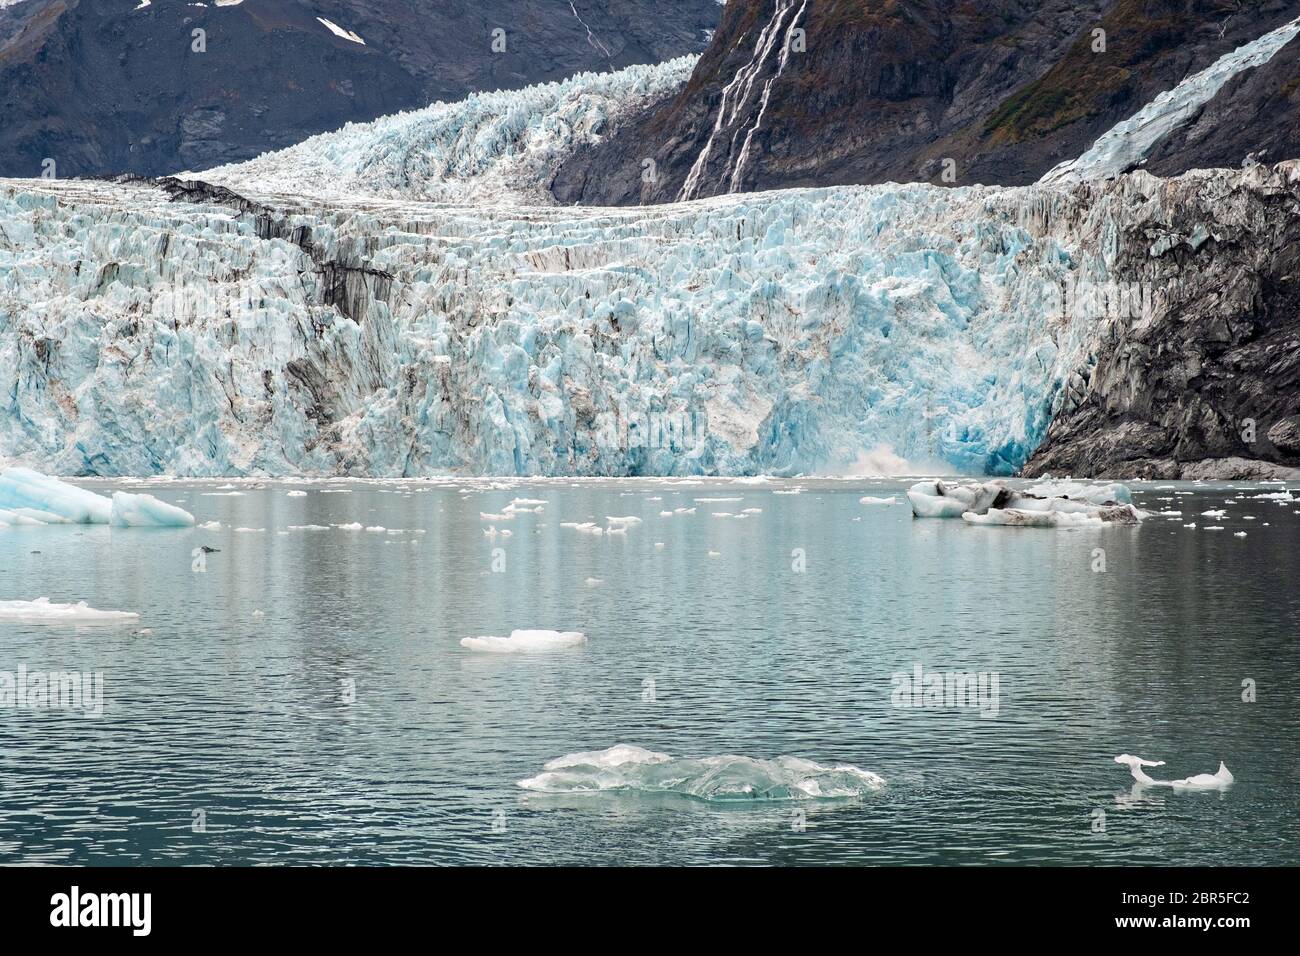 Il ghiacciaio a sorpresa con la morena mediale che corre lungo il centro e ghiaccio di brash galleggianti nel fiordo Harriman, vicino a Whittier, Alaska. Il ghiacciaio Surprise è il più attivo ghiacciaio di acqua di mare calvente del Prince William Sound. Foto Stock